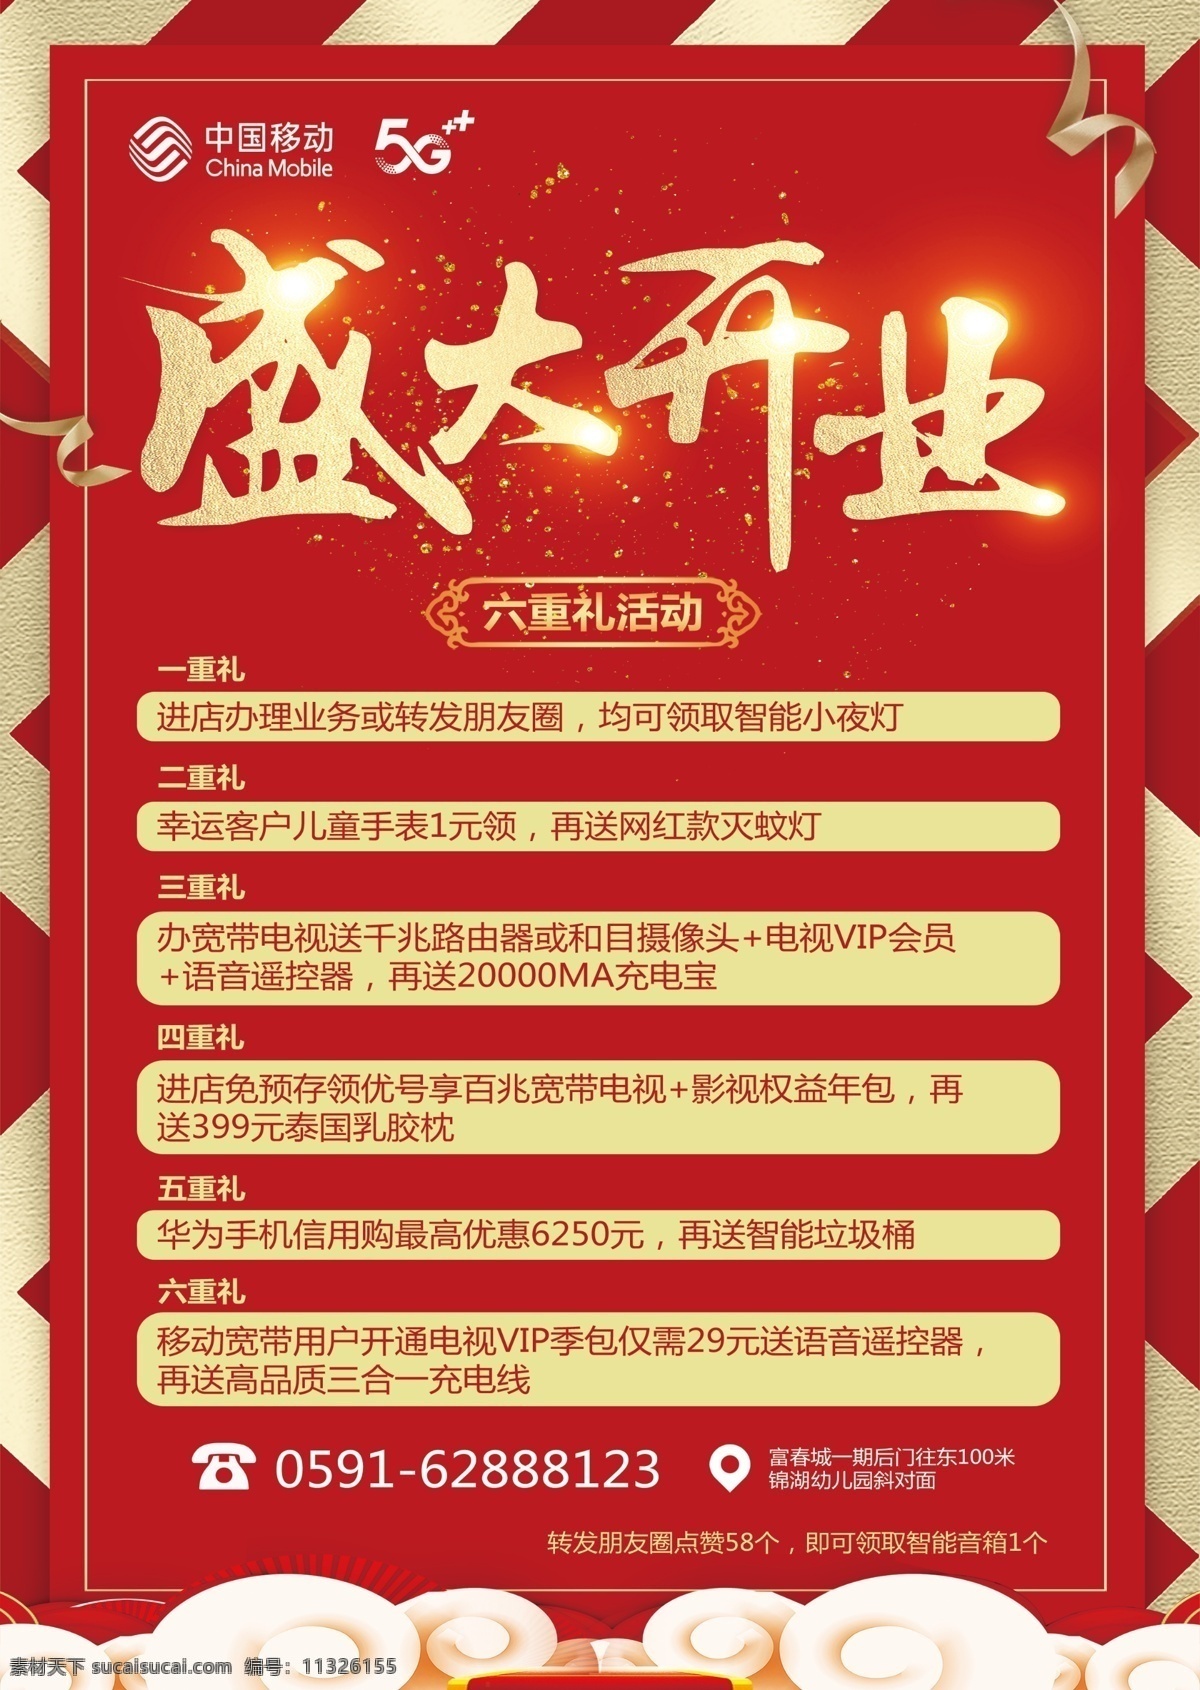 盛大开业 中国移动 套餐 六重礼 礼带 红色 海报